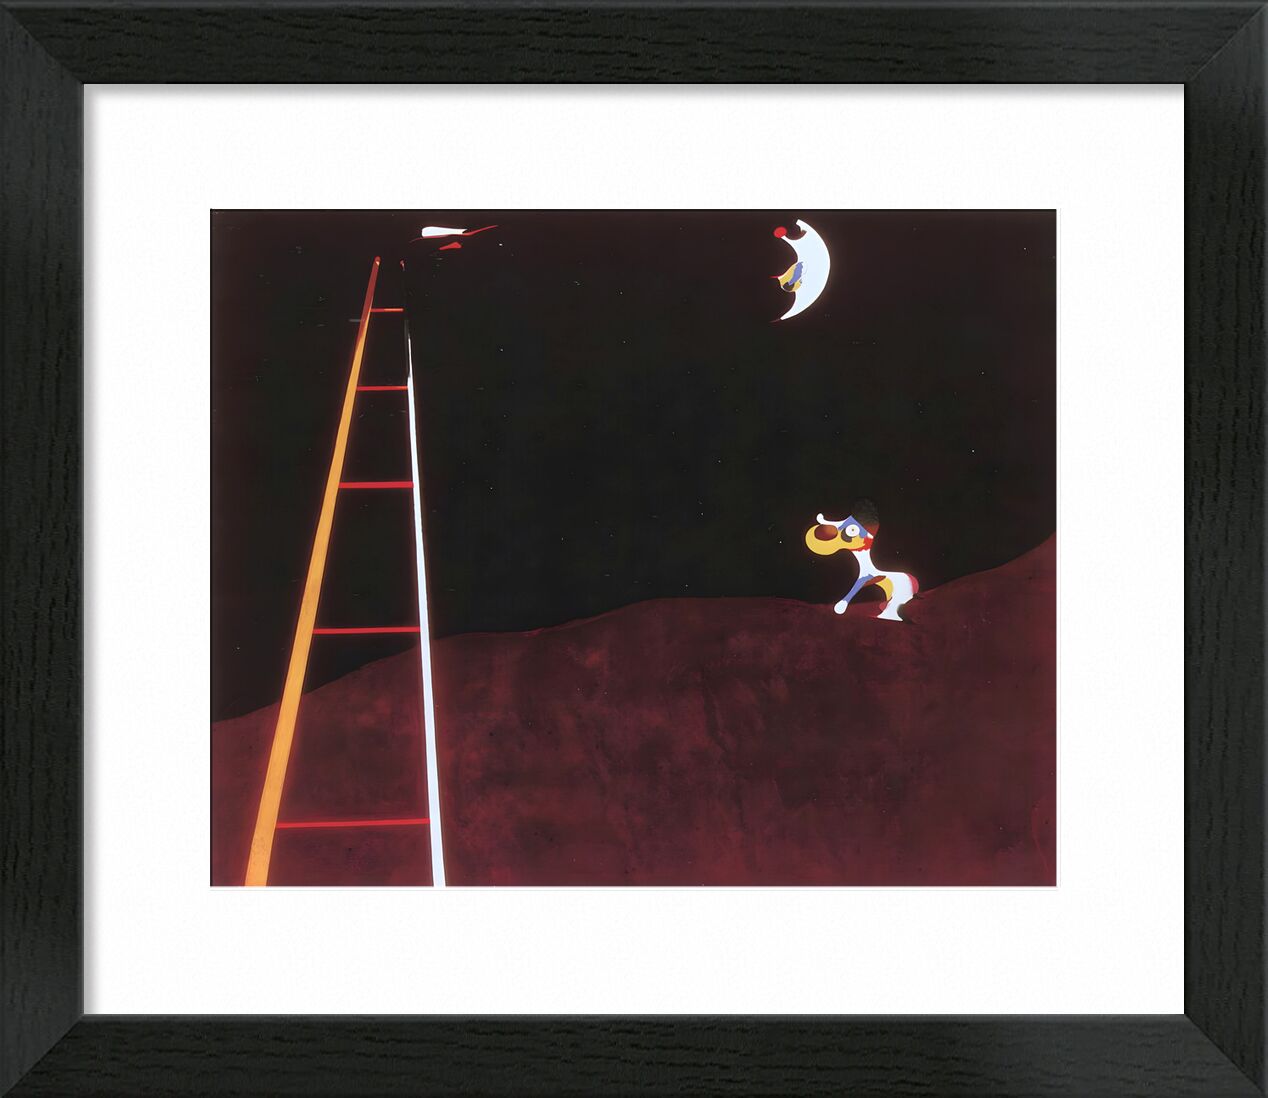 Hund bellt den Mond an - Joan Miró von Bildende Kunst, Prodi Art, Miro, Rahmen, Mond, Zeichnung, Hund, Joan Miró